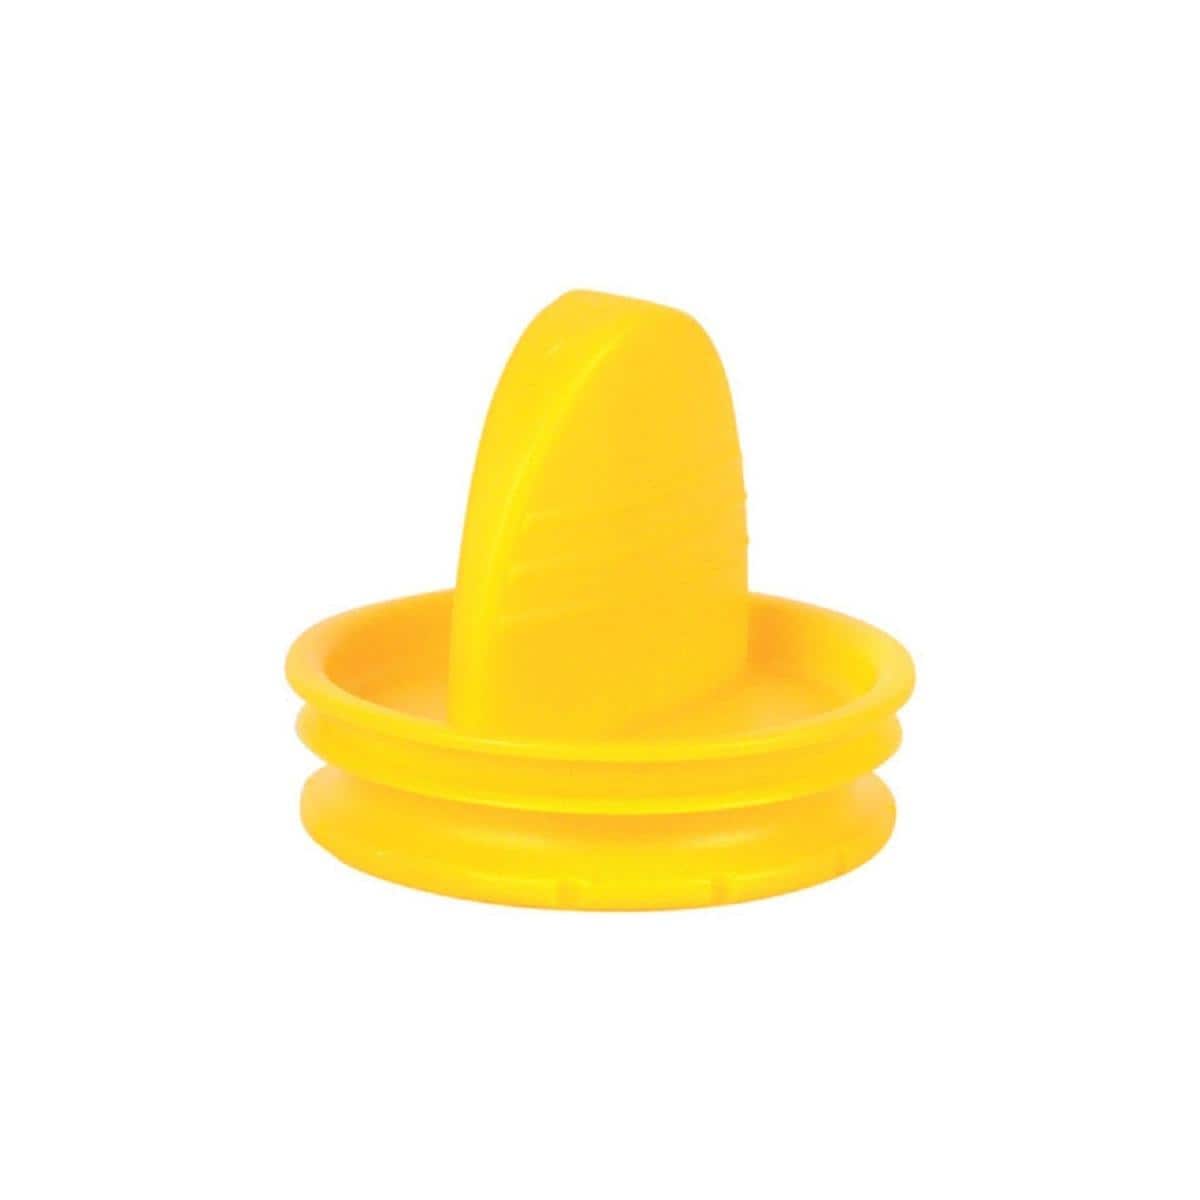 Dop voor disposable afzuigfilter geel - REF. 0725-041-03, per stuk